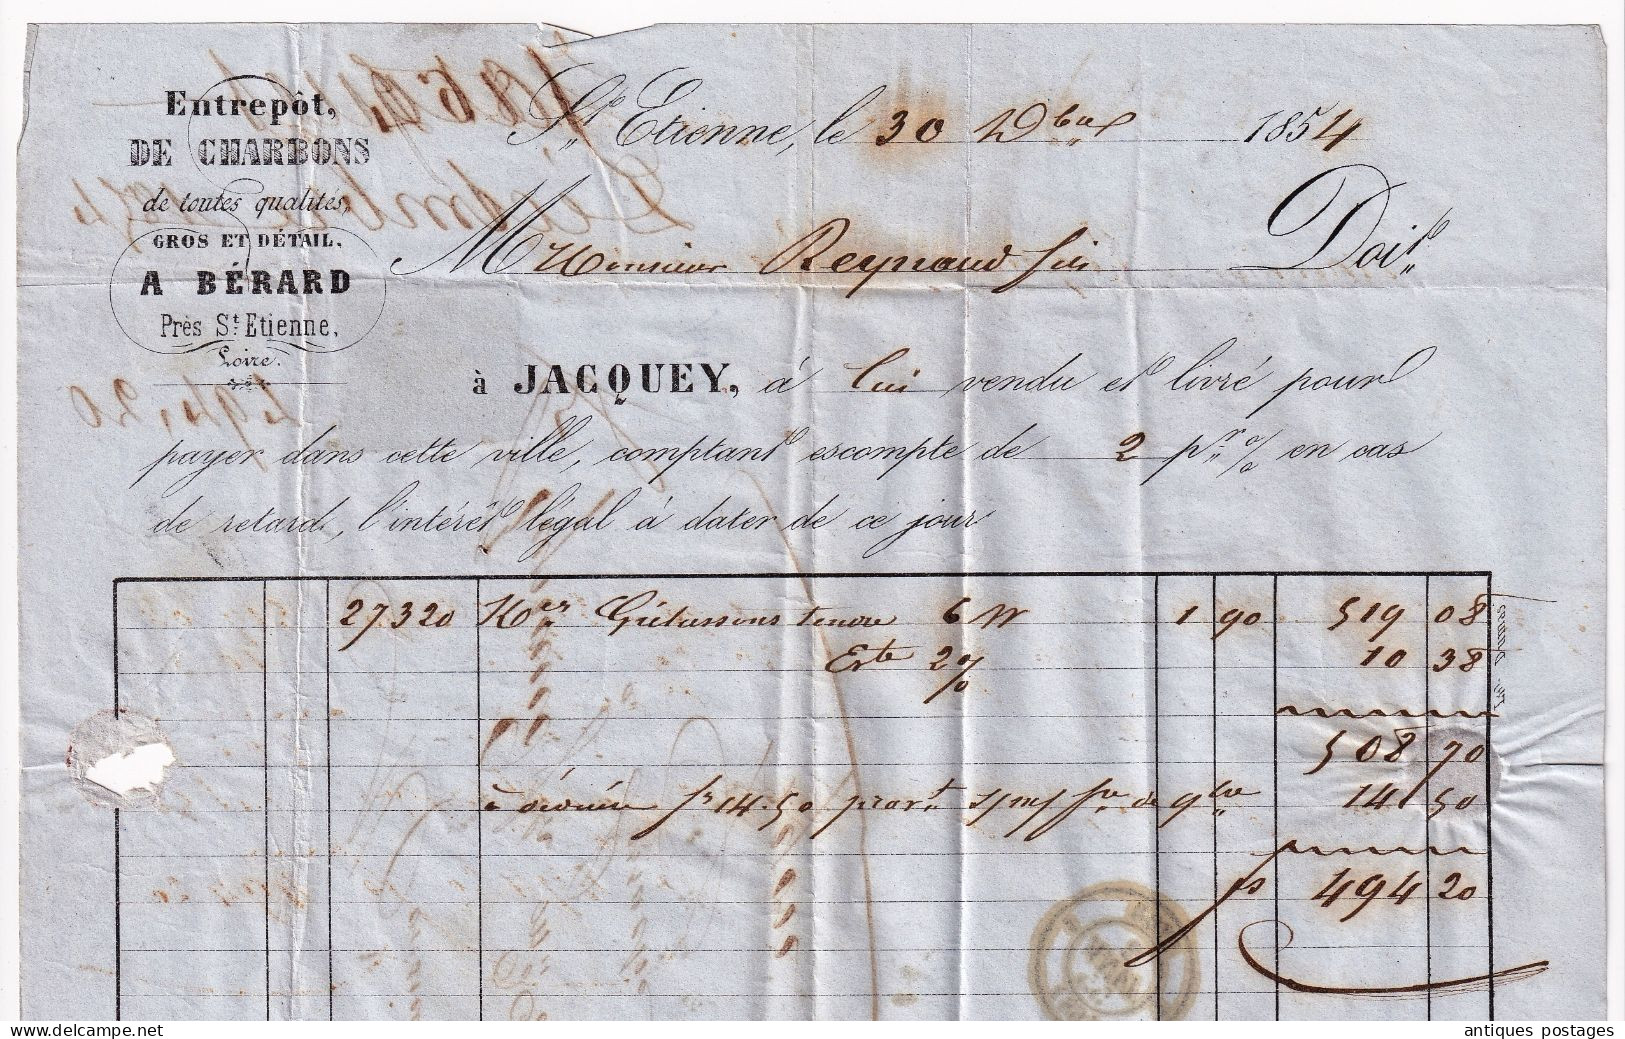 Lettre 1855 Saint Étienne Bérard Raynaud Marchand de Charbon Lyon Timbre Napoléon III non dentelé avec voisin